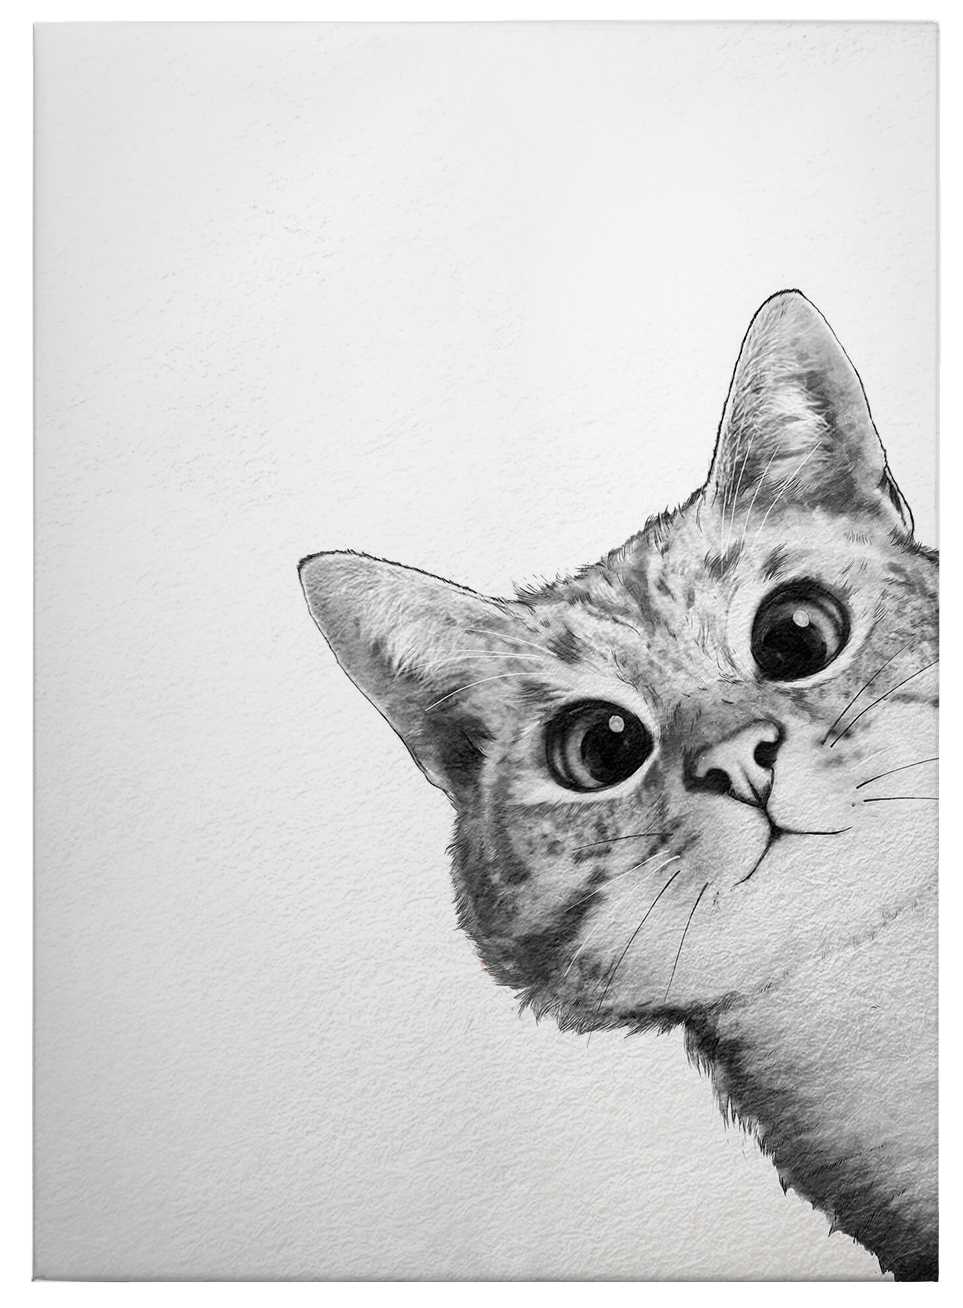             Tableau sur toile "Sneaky Cat" de Graves, chat en noir et blanc - 0,50 m x 0,70 m
        